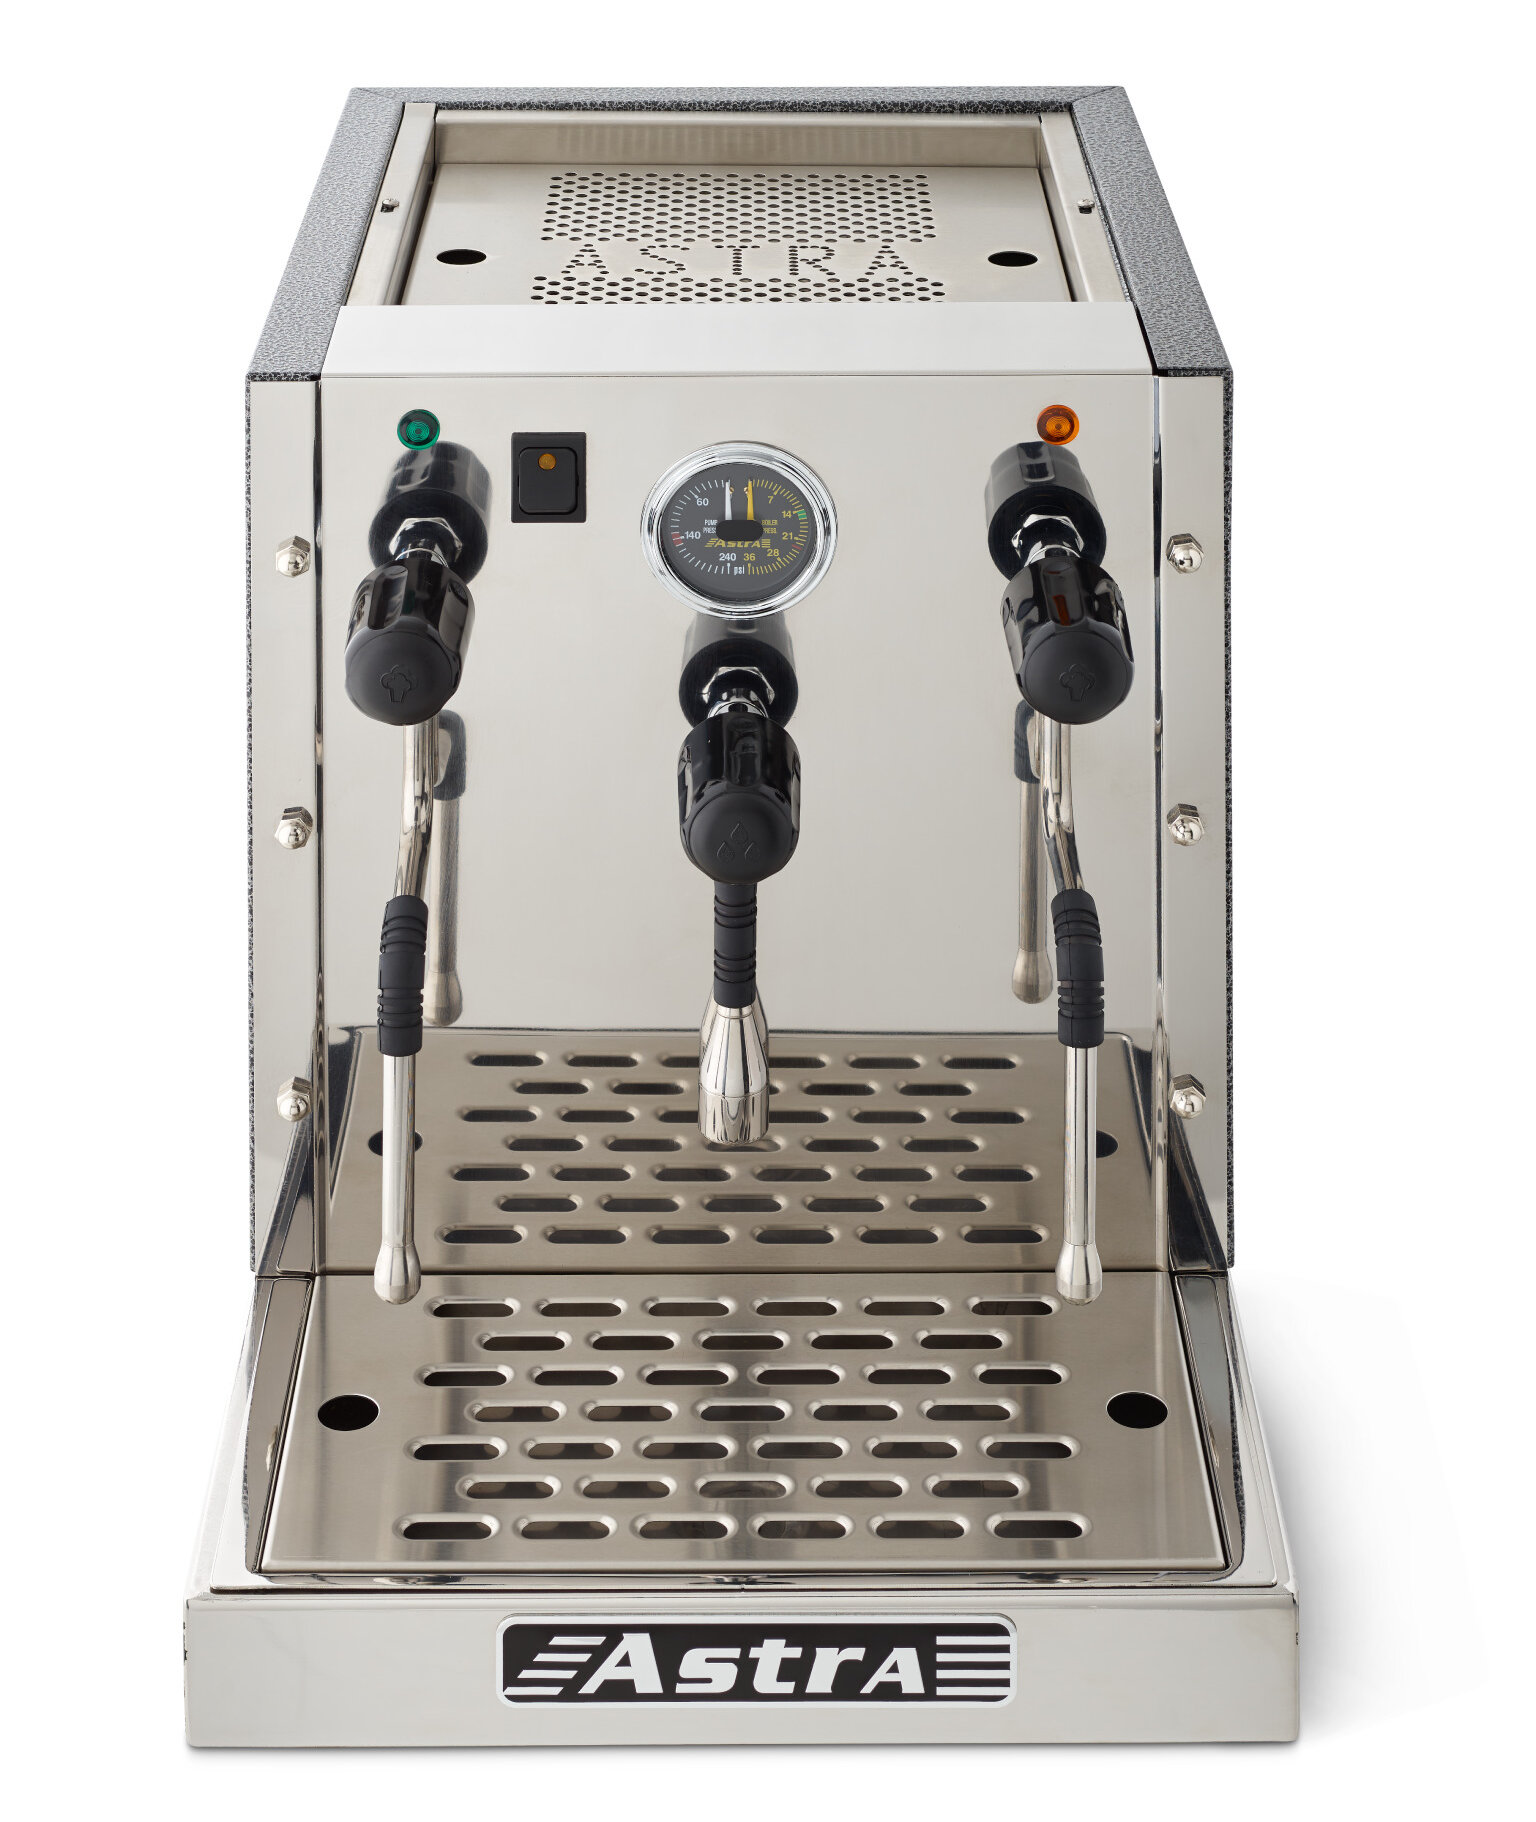 Astra Manufacturing Steamer Espresso Machine | Wayfair